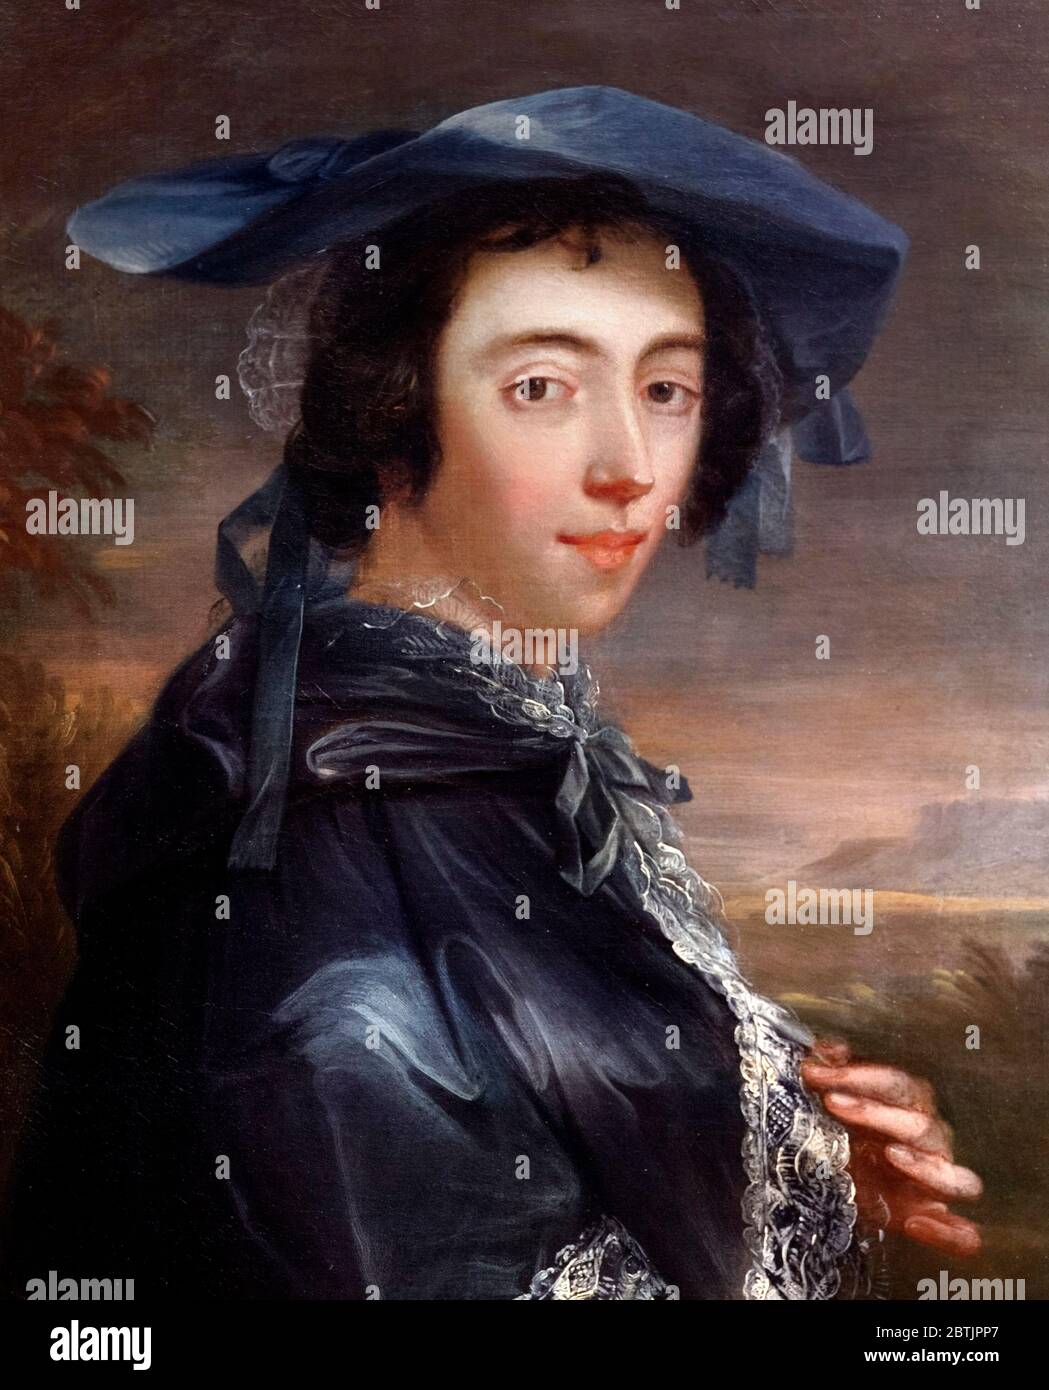 PEG Woffington (1720 – 1760), eine berühmte irische Schauspielerin in Georgian London. Porträt von John Lewis, Öl auf Leinwand, 1753 Stockfoto